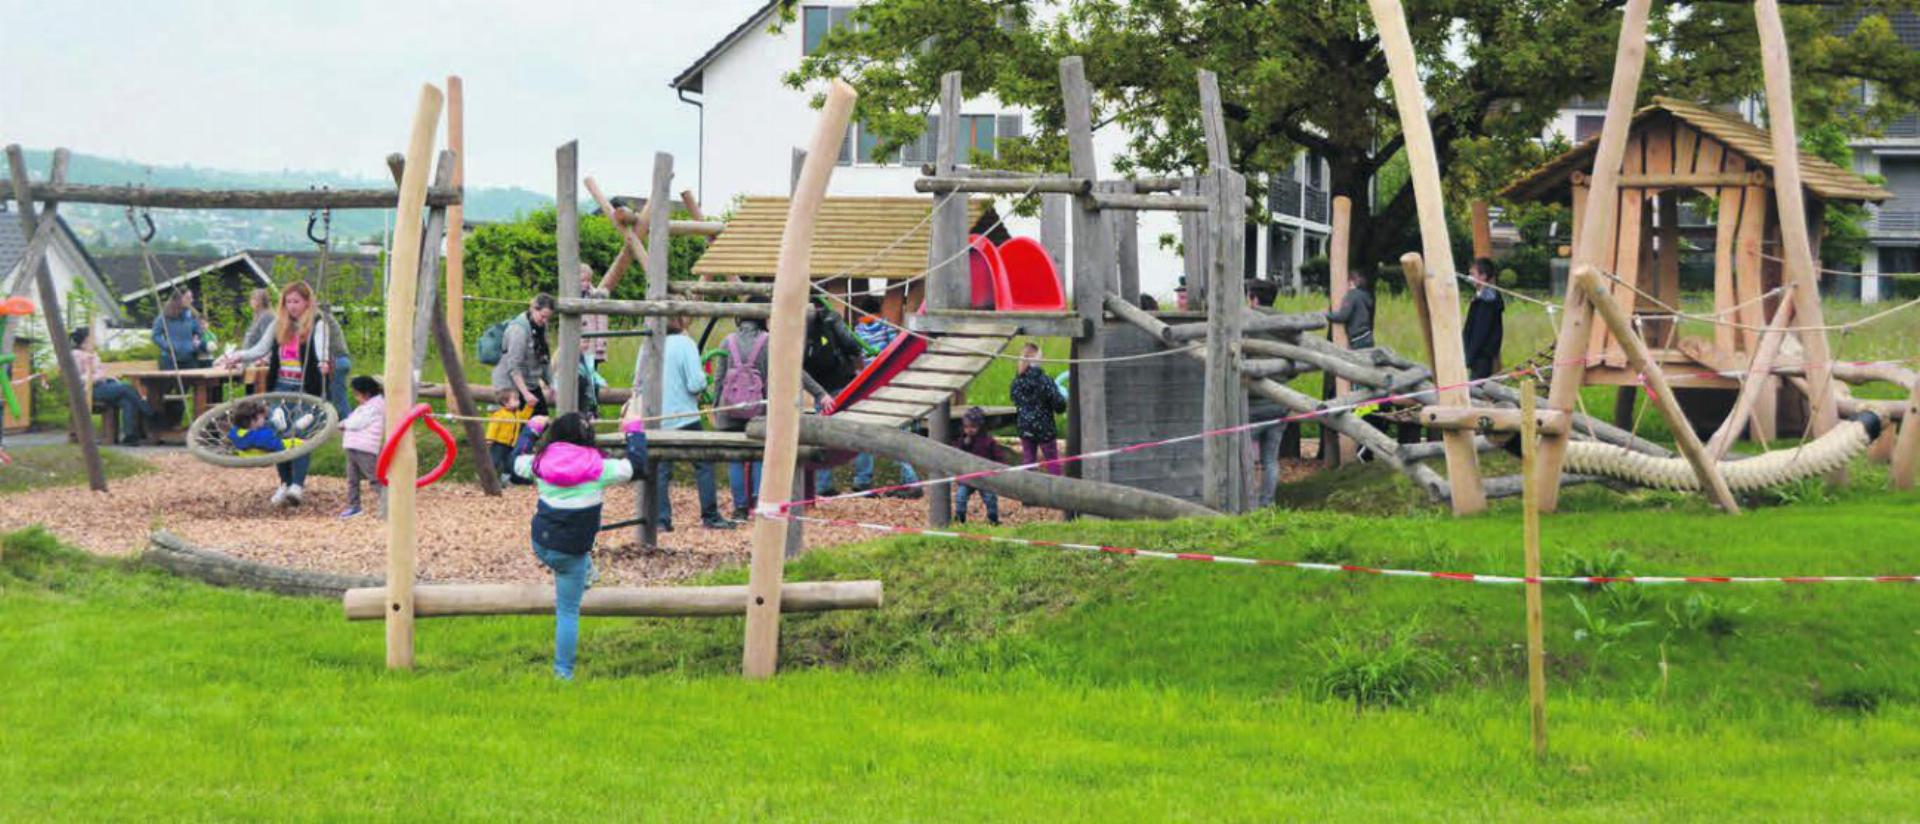 Die begeisterten Kinder stürmen den frisch eingeweihten Spielplatz. Bilder: Sabrina Salm